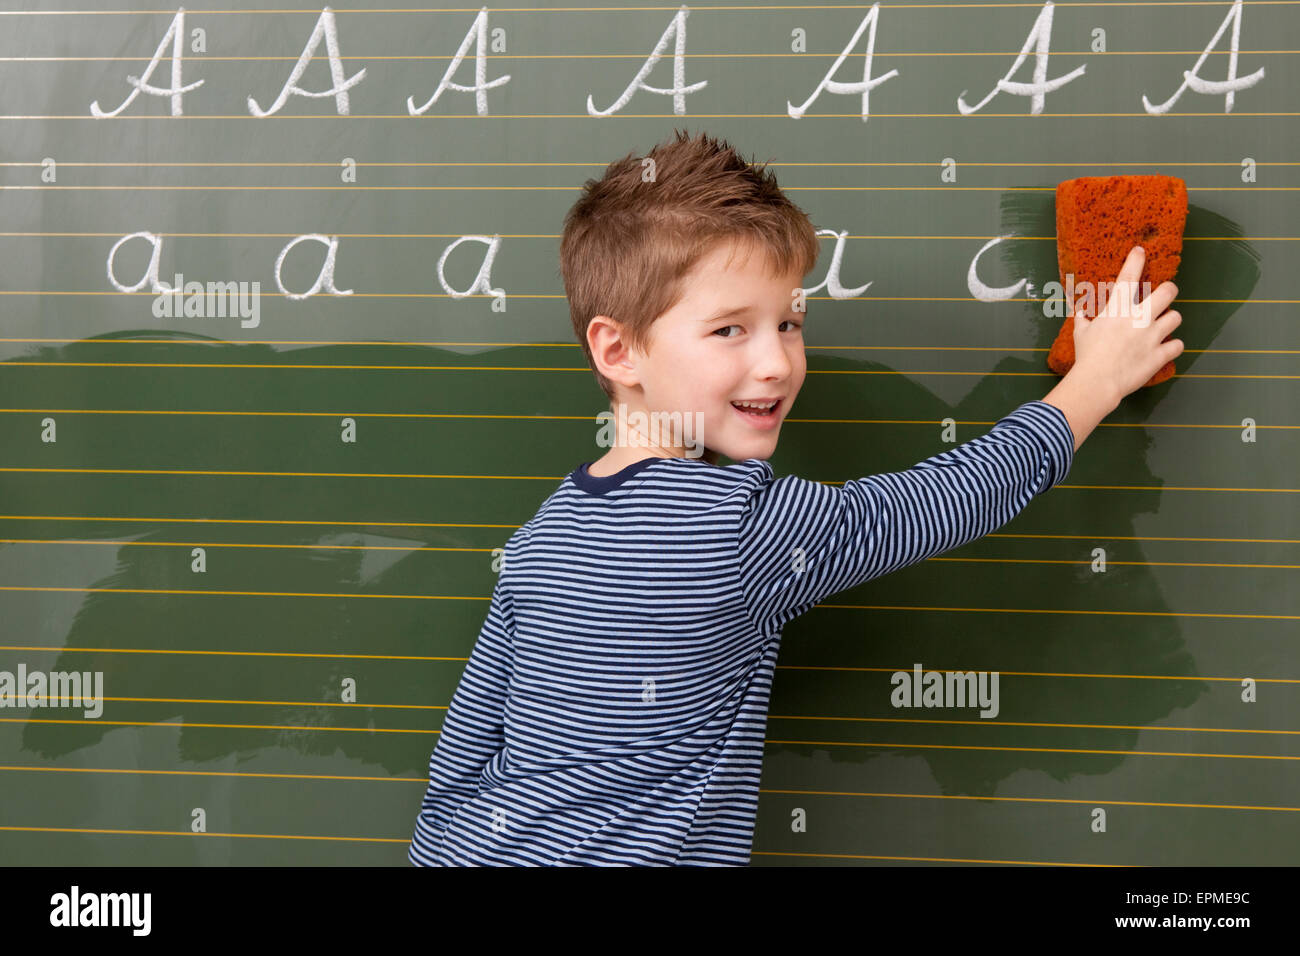 Schüler an der Tafel wischen Weg Buchstaben A Stockfotografie - Alamy